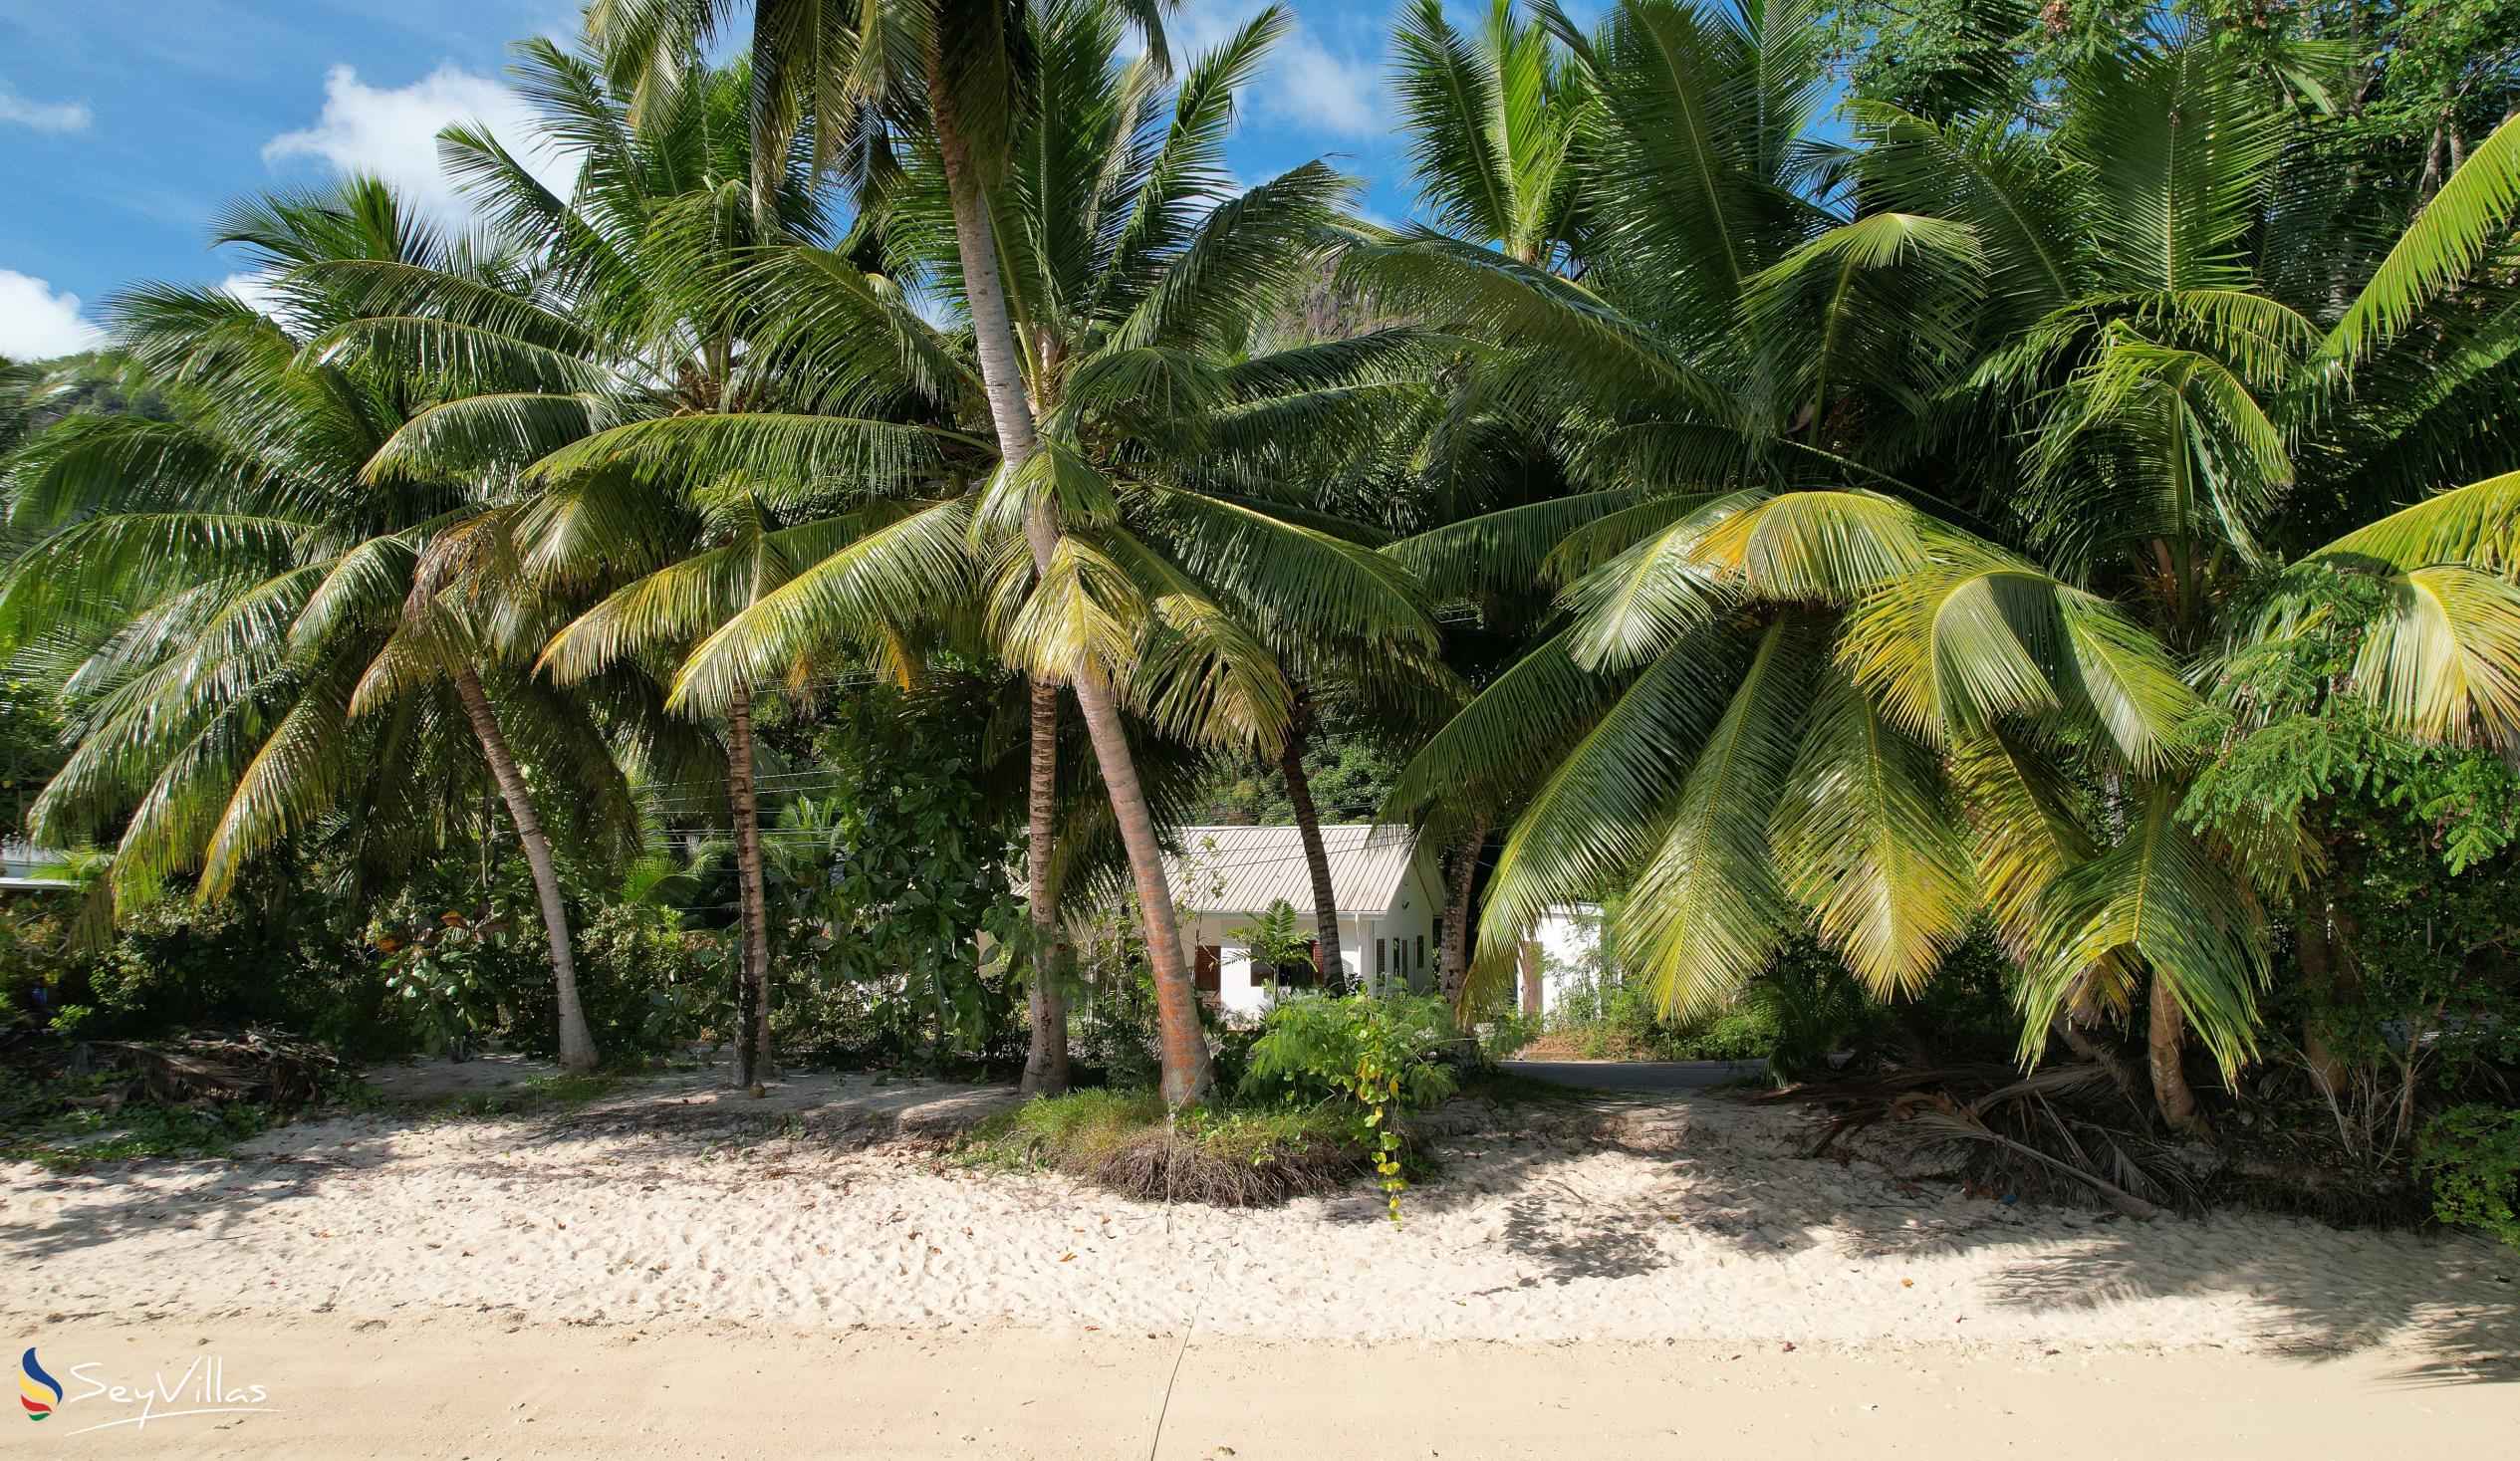 Foto 4: Villa Zananas - Aussenbereich - Praslin (Seychellen)